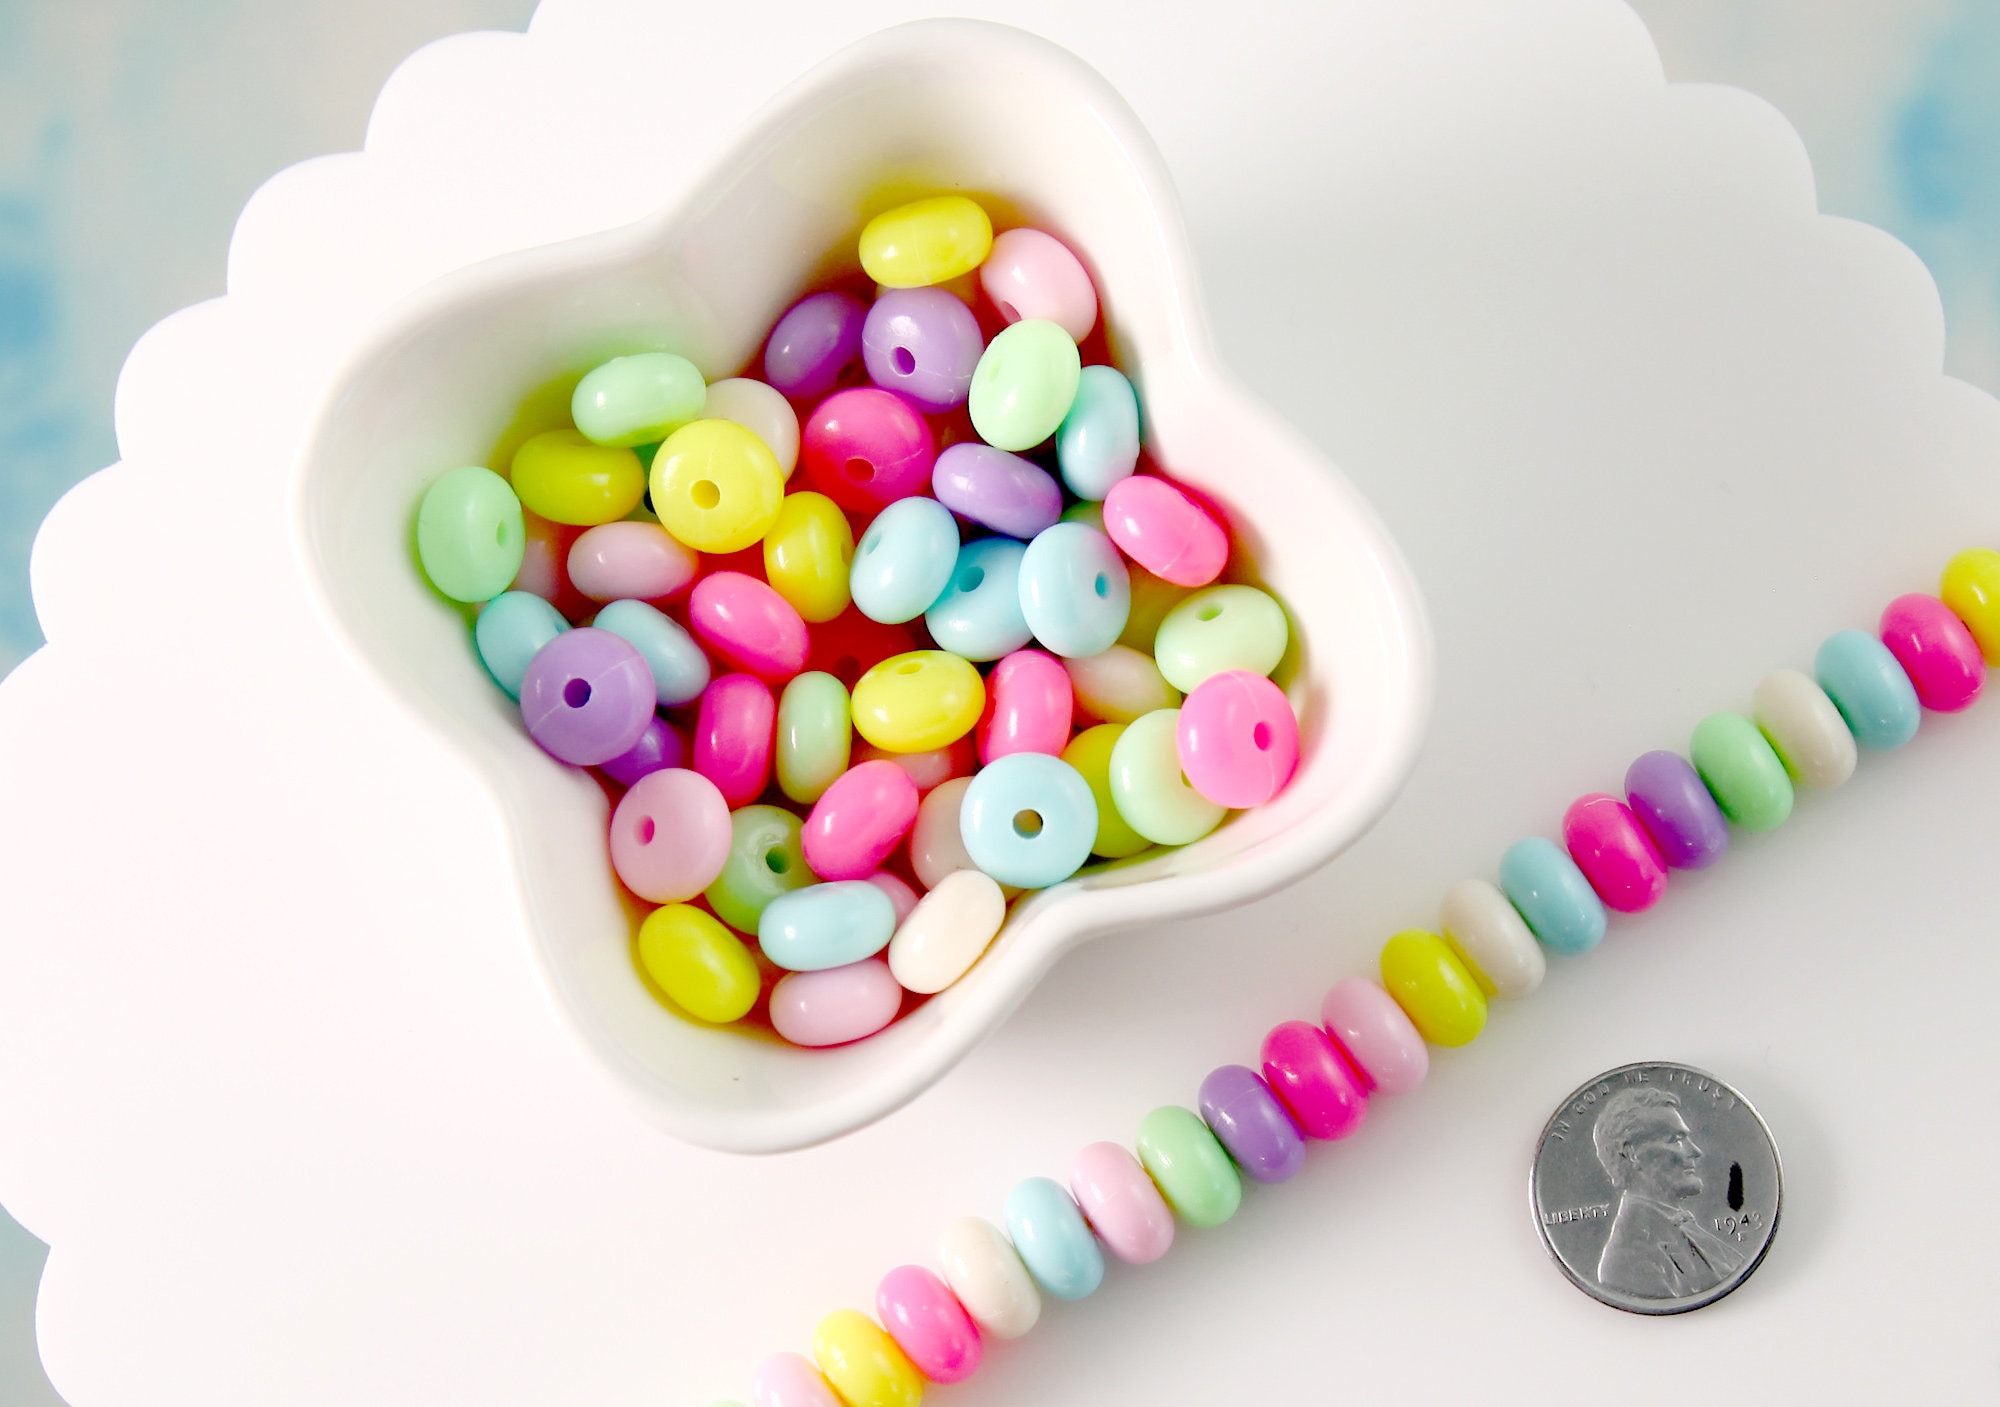 Cute Beads 28mm Cute AB Teddy Bear Bead Chunky Acrylic or Plastic